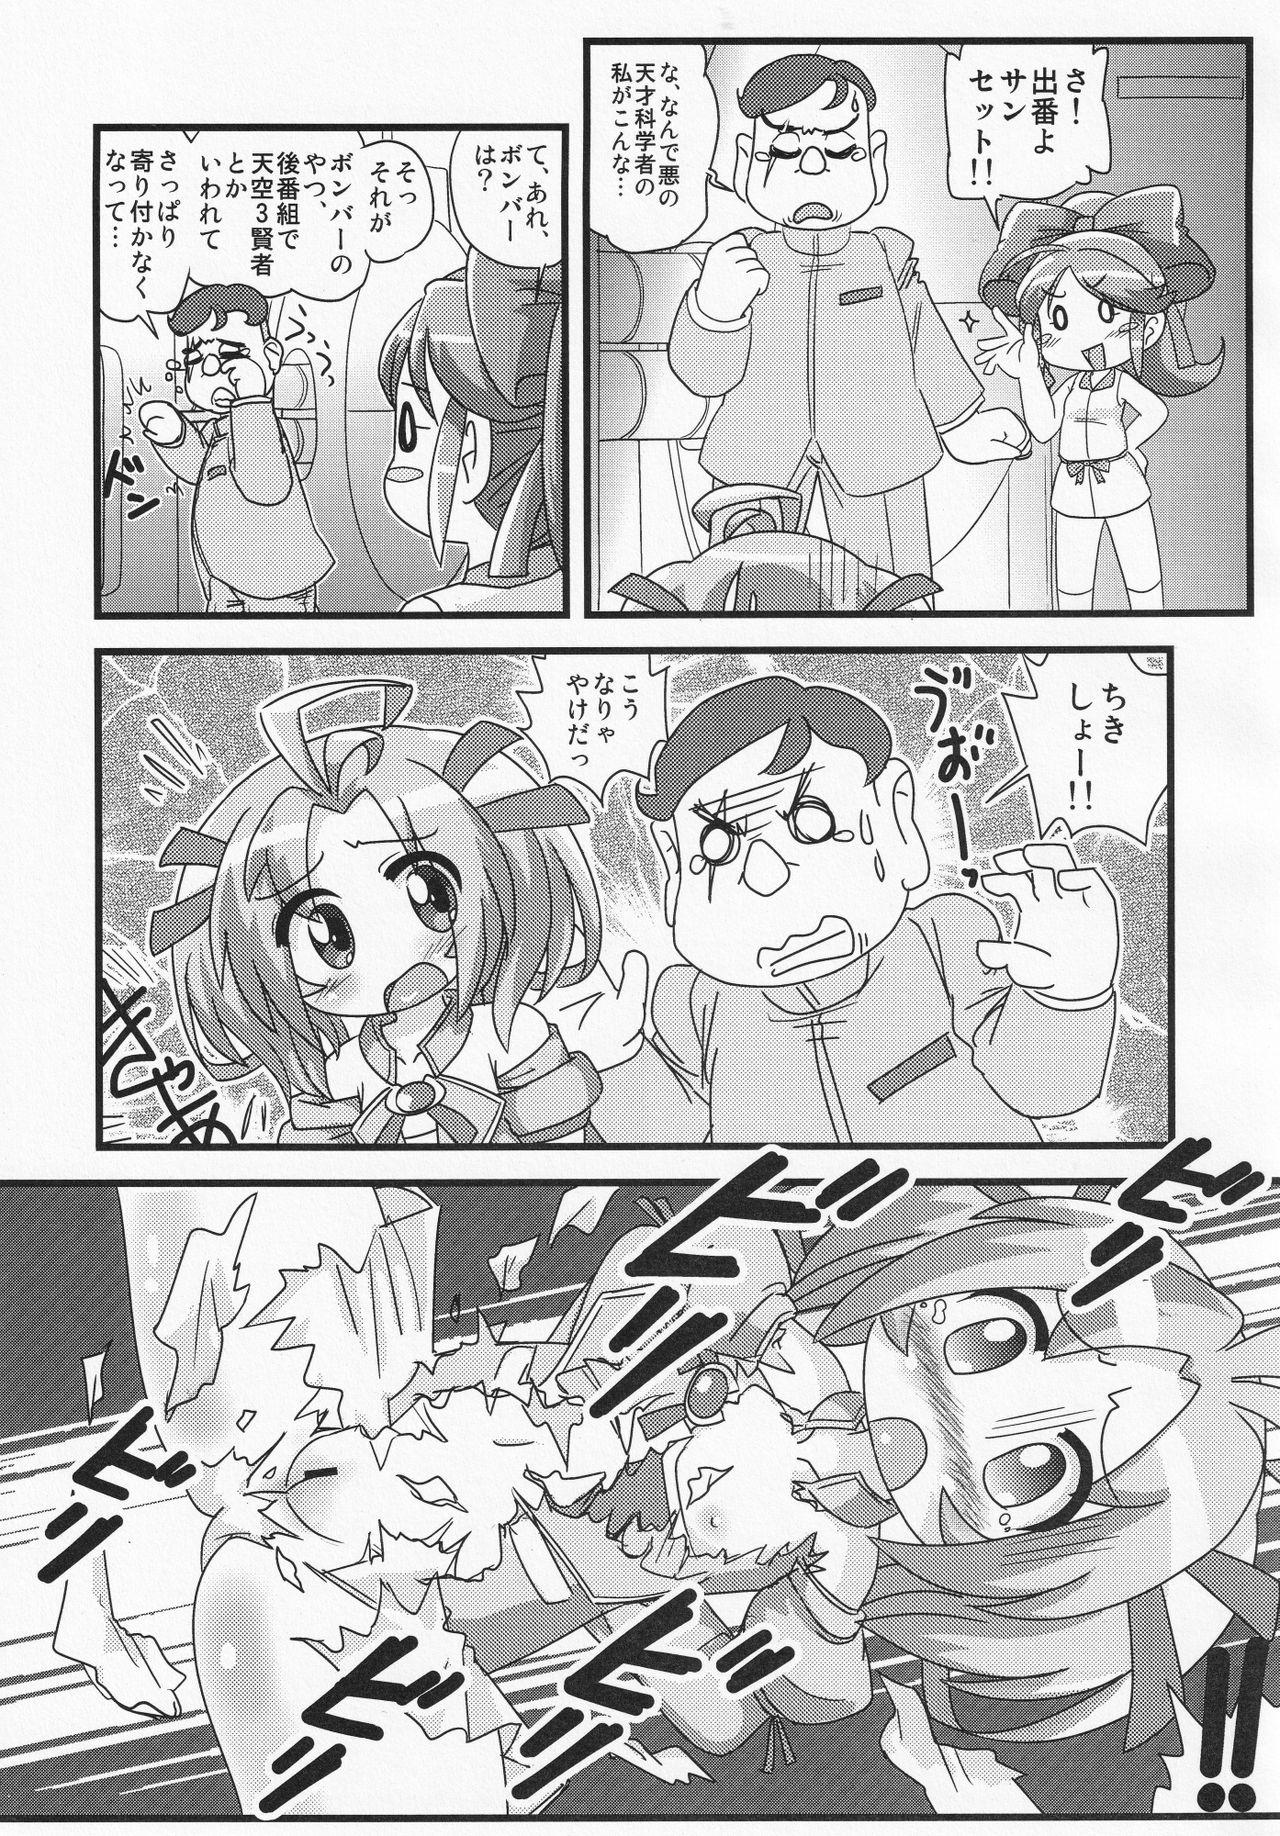 Str8 Makeru na!! Kimari-chan - Battle spirits Porno 18 - Page 6